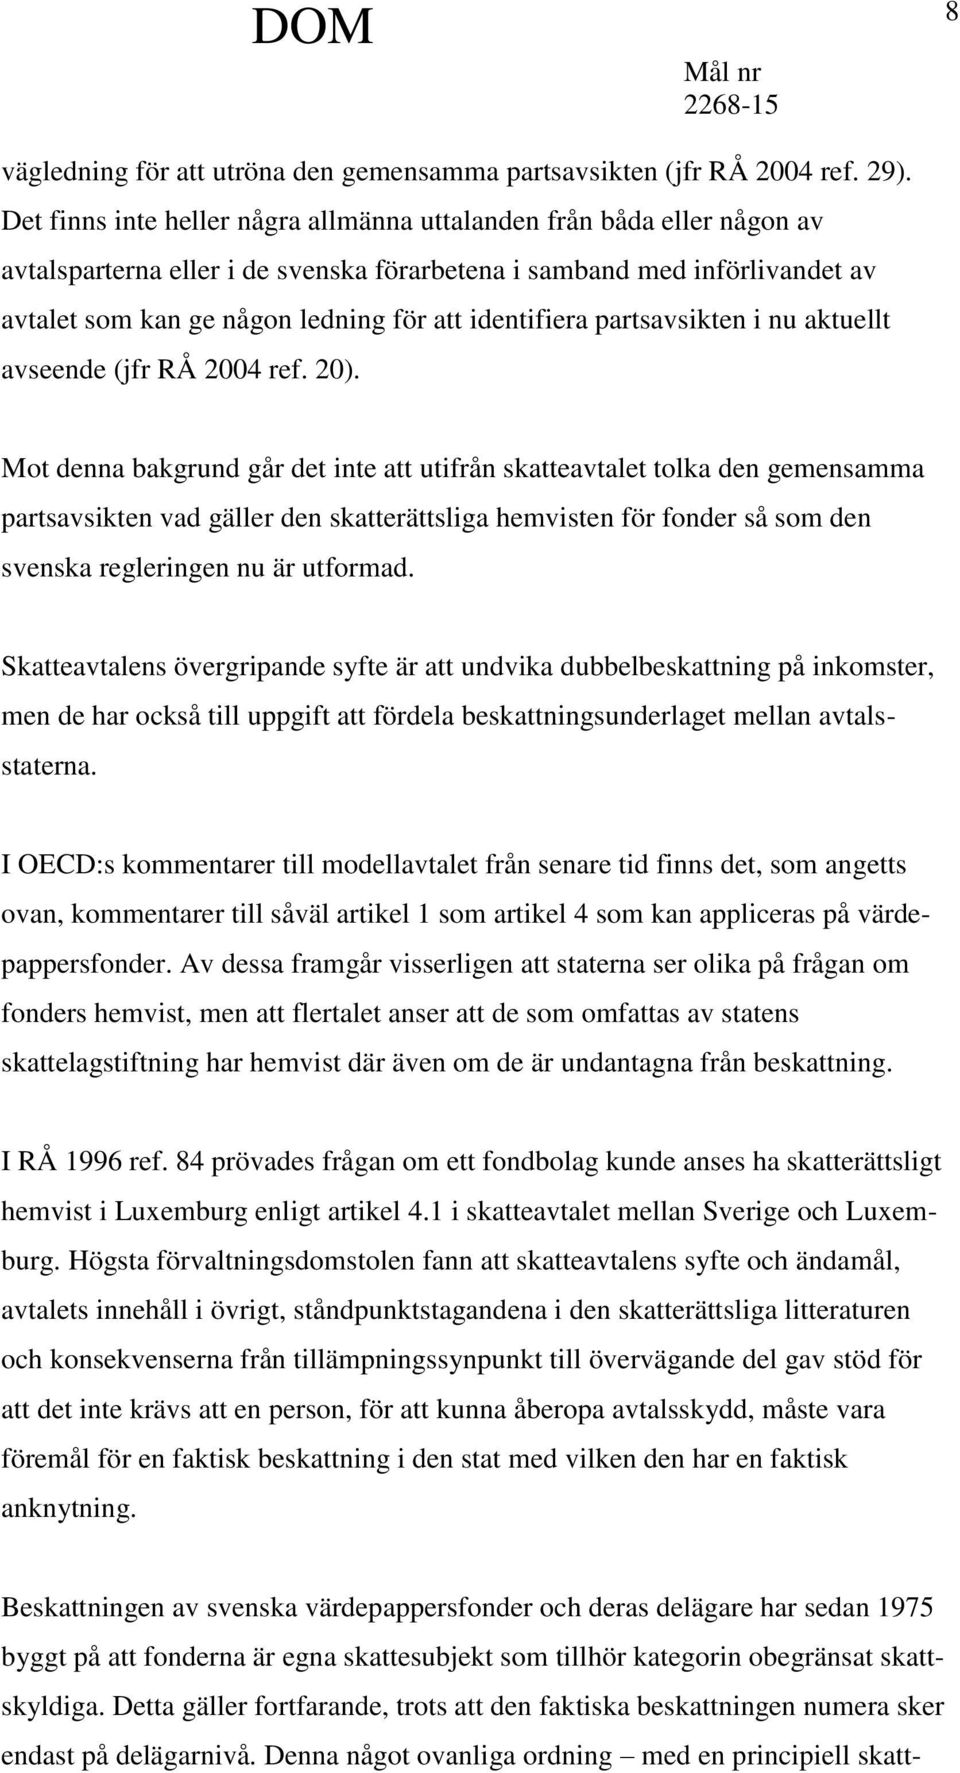 identifiera partsavsikten i nu aktuellt avseende (jfr RÅ 2004 ref. 20).